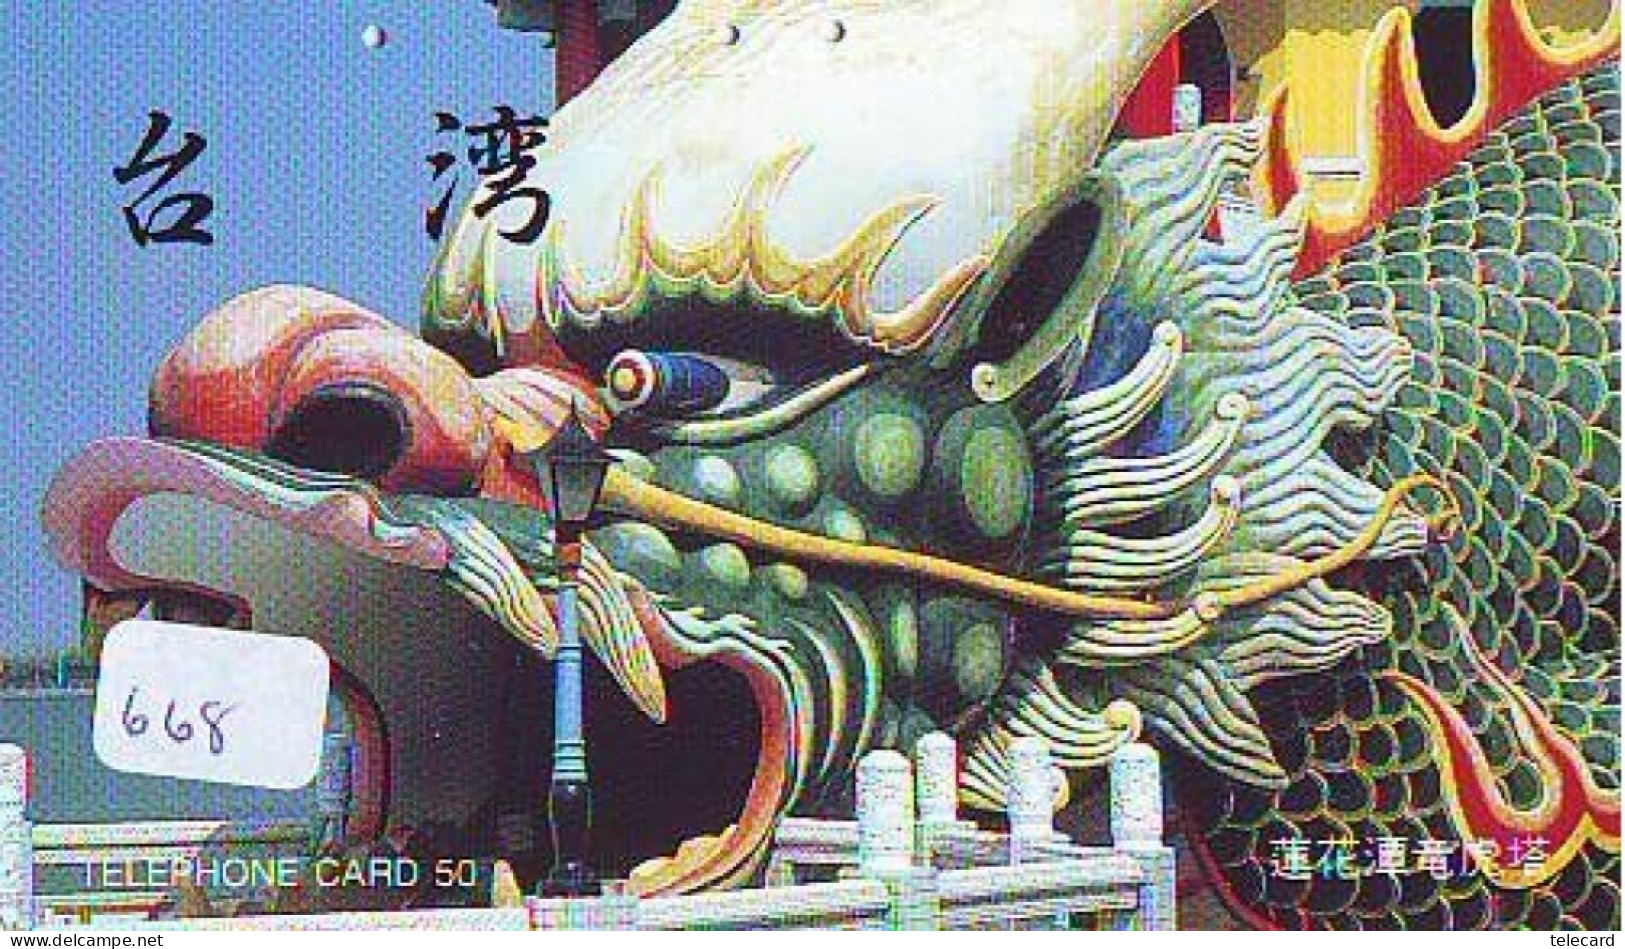 Télécarte Japon * DRAGON L'ESTRAGON DRACHE DRAGÓN DRAGO (668) Zodiaque - Zodiac Horoscope * Phonecard Japan - Zodiaque